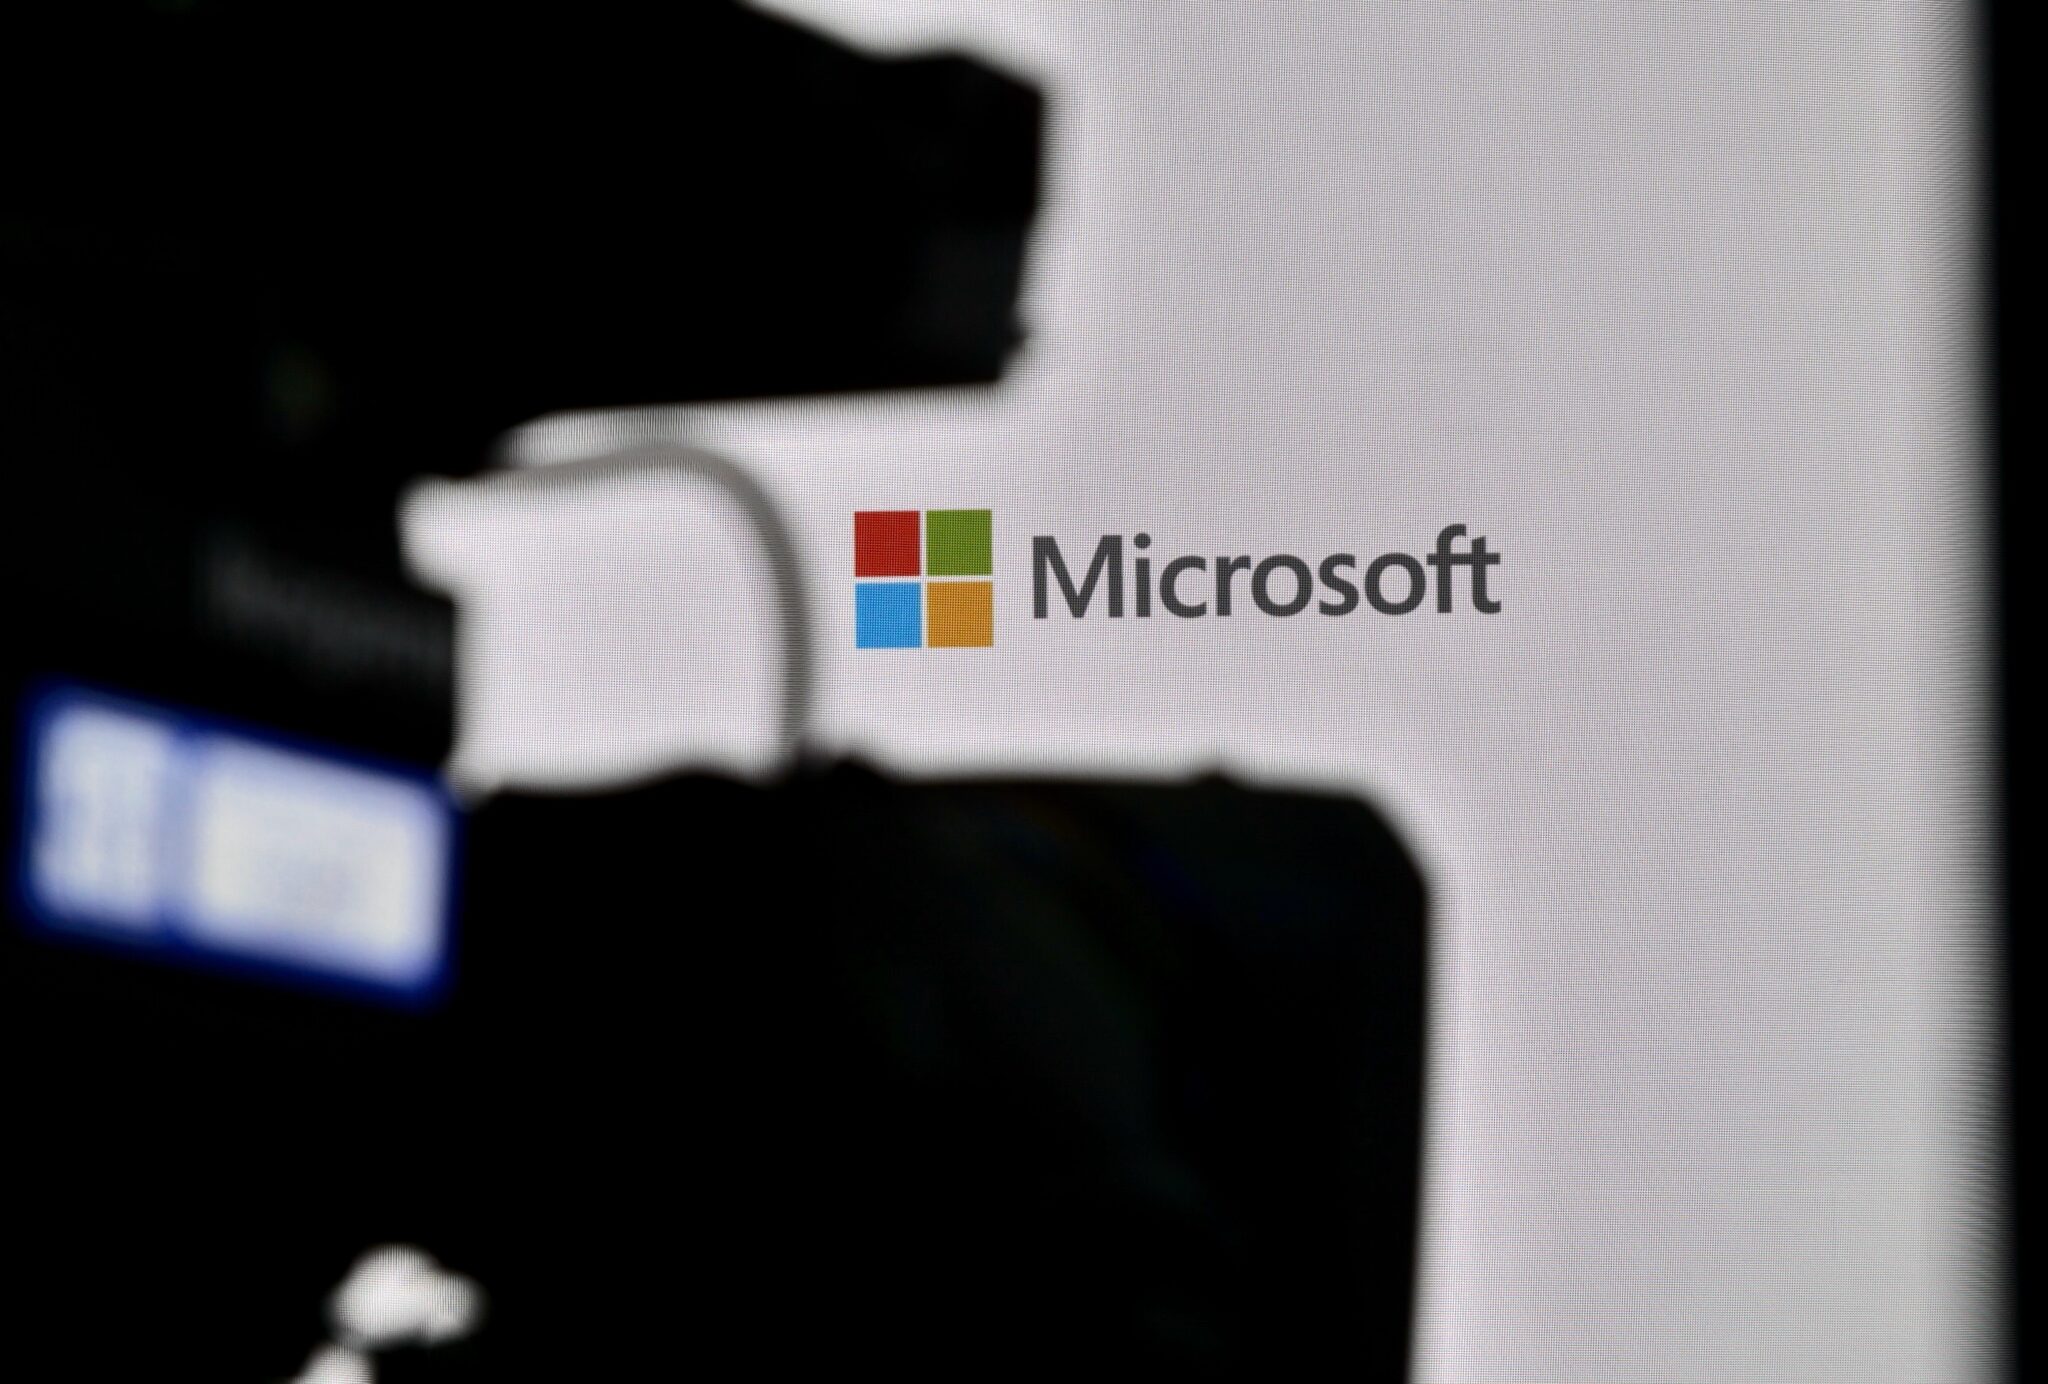 Microsoft ha cercato di mettere a tacere la vulnerabilità in DALL-E, ha dichiarato un funzionario dell'azienda.